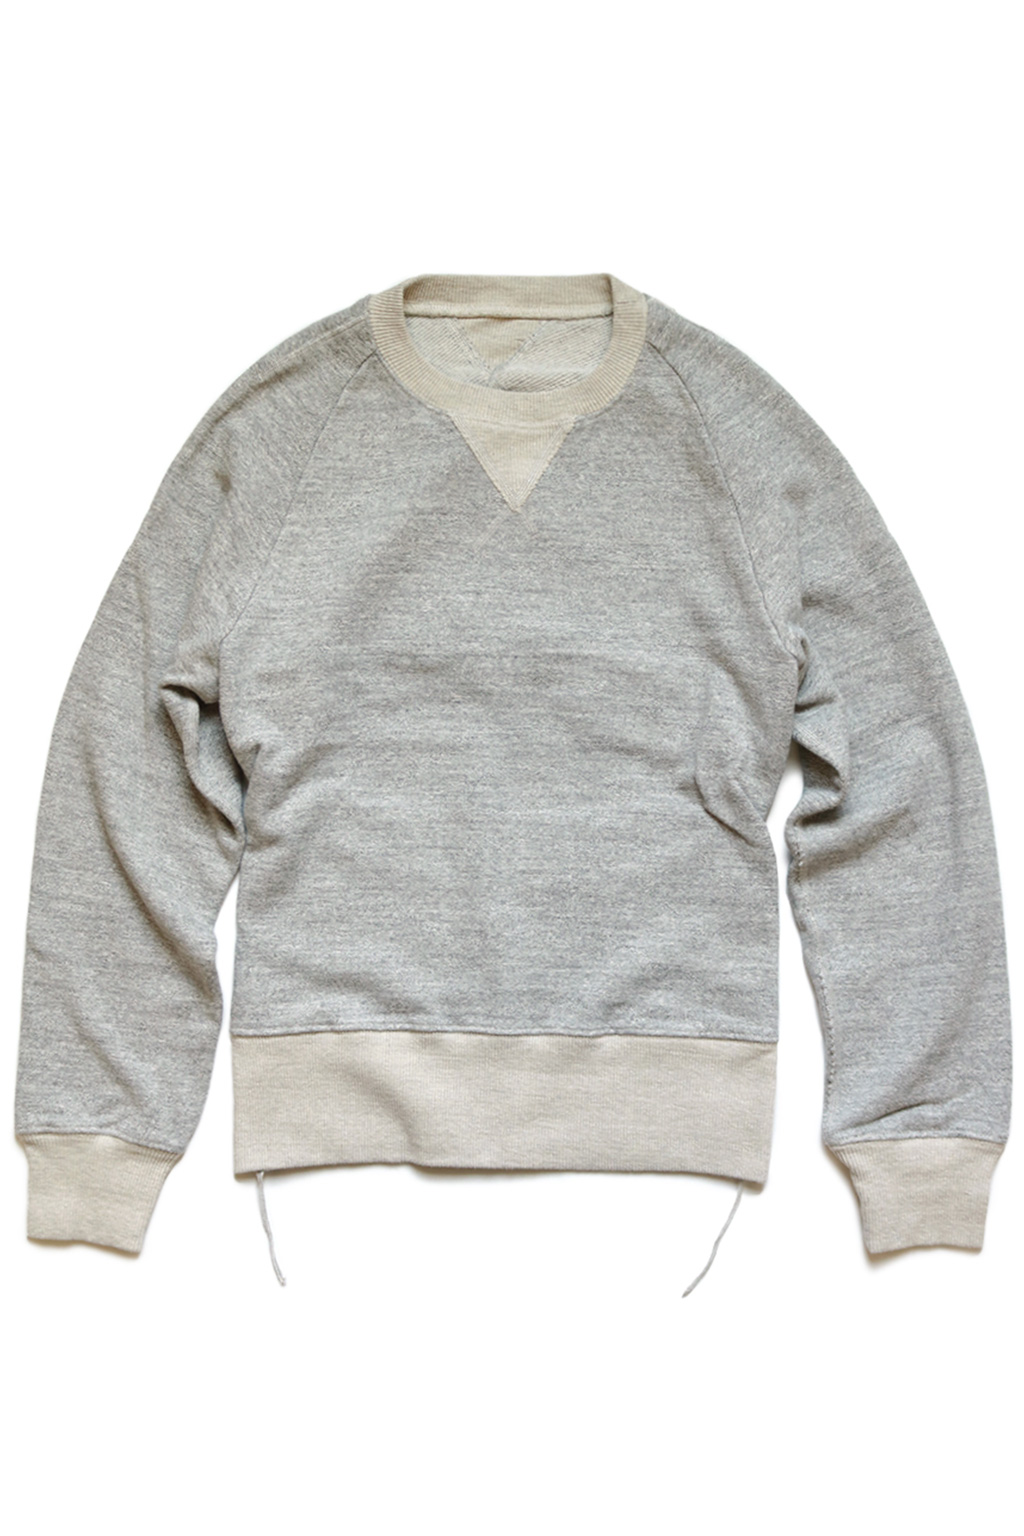 BlueButtonShop - Kapital - Kapital-Fleece-Knit-BANDA-Sweater-Grey ...